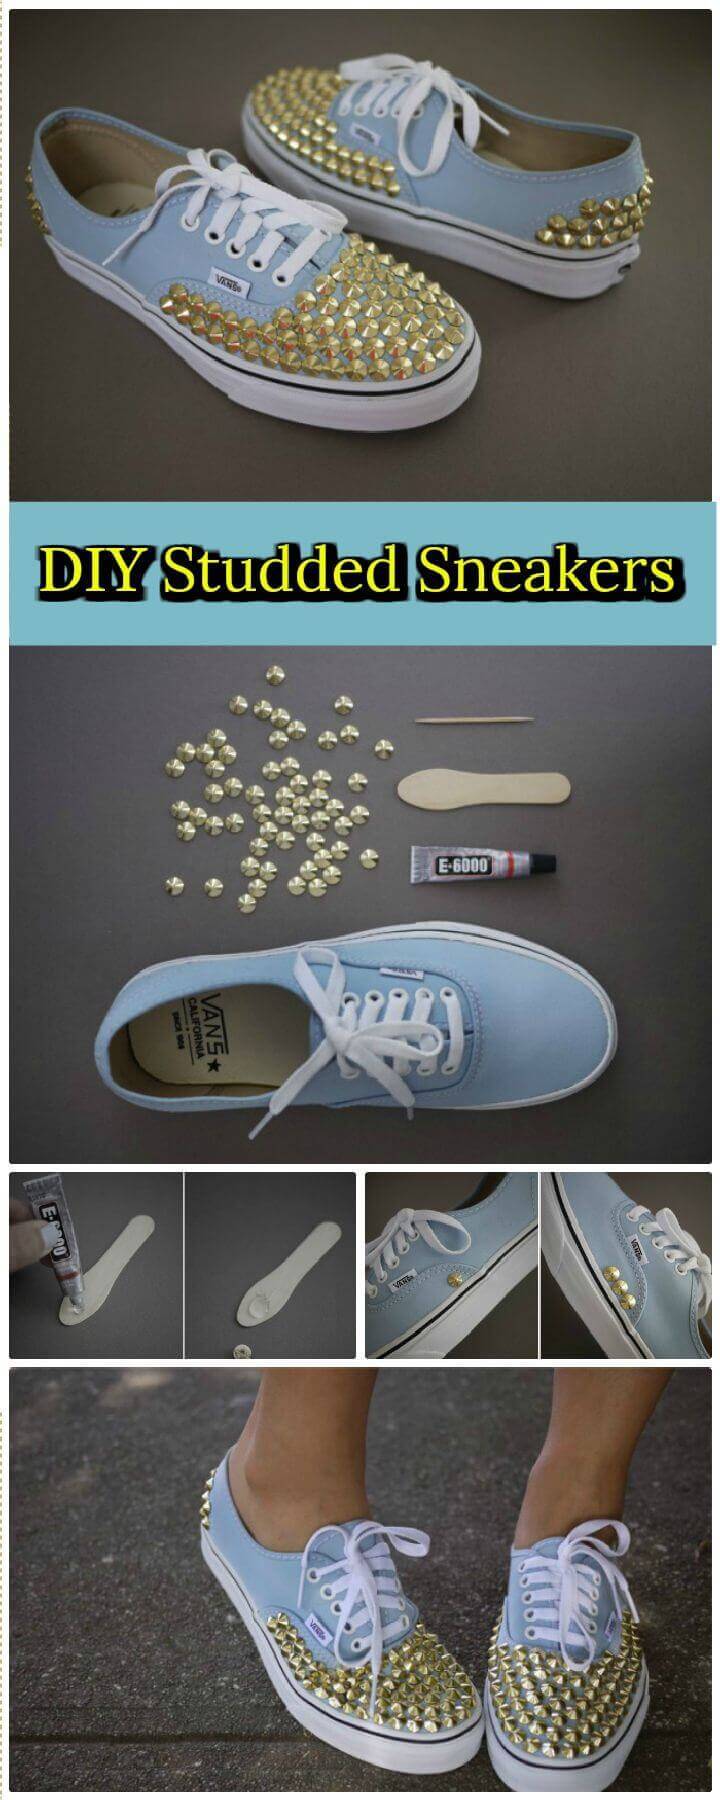 DIY Cute Studded Sneakers